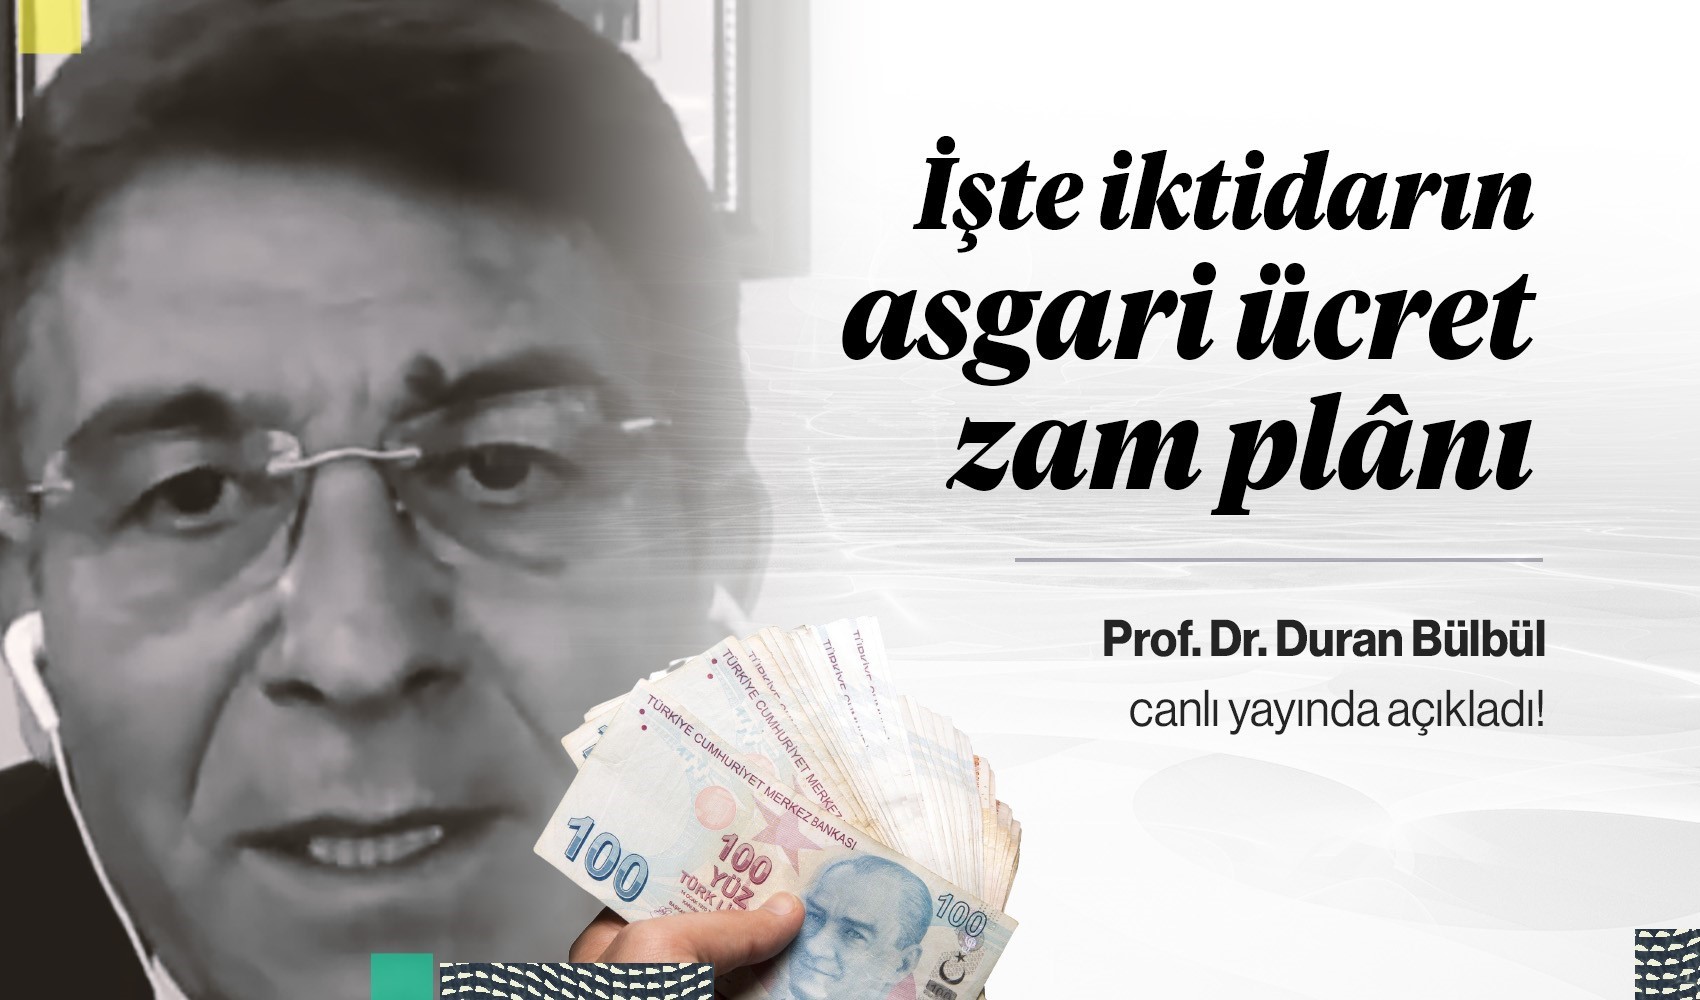 İşte iktidarın asgari ücret plânı: Prof. Duran Bülbül açıkladı...